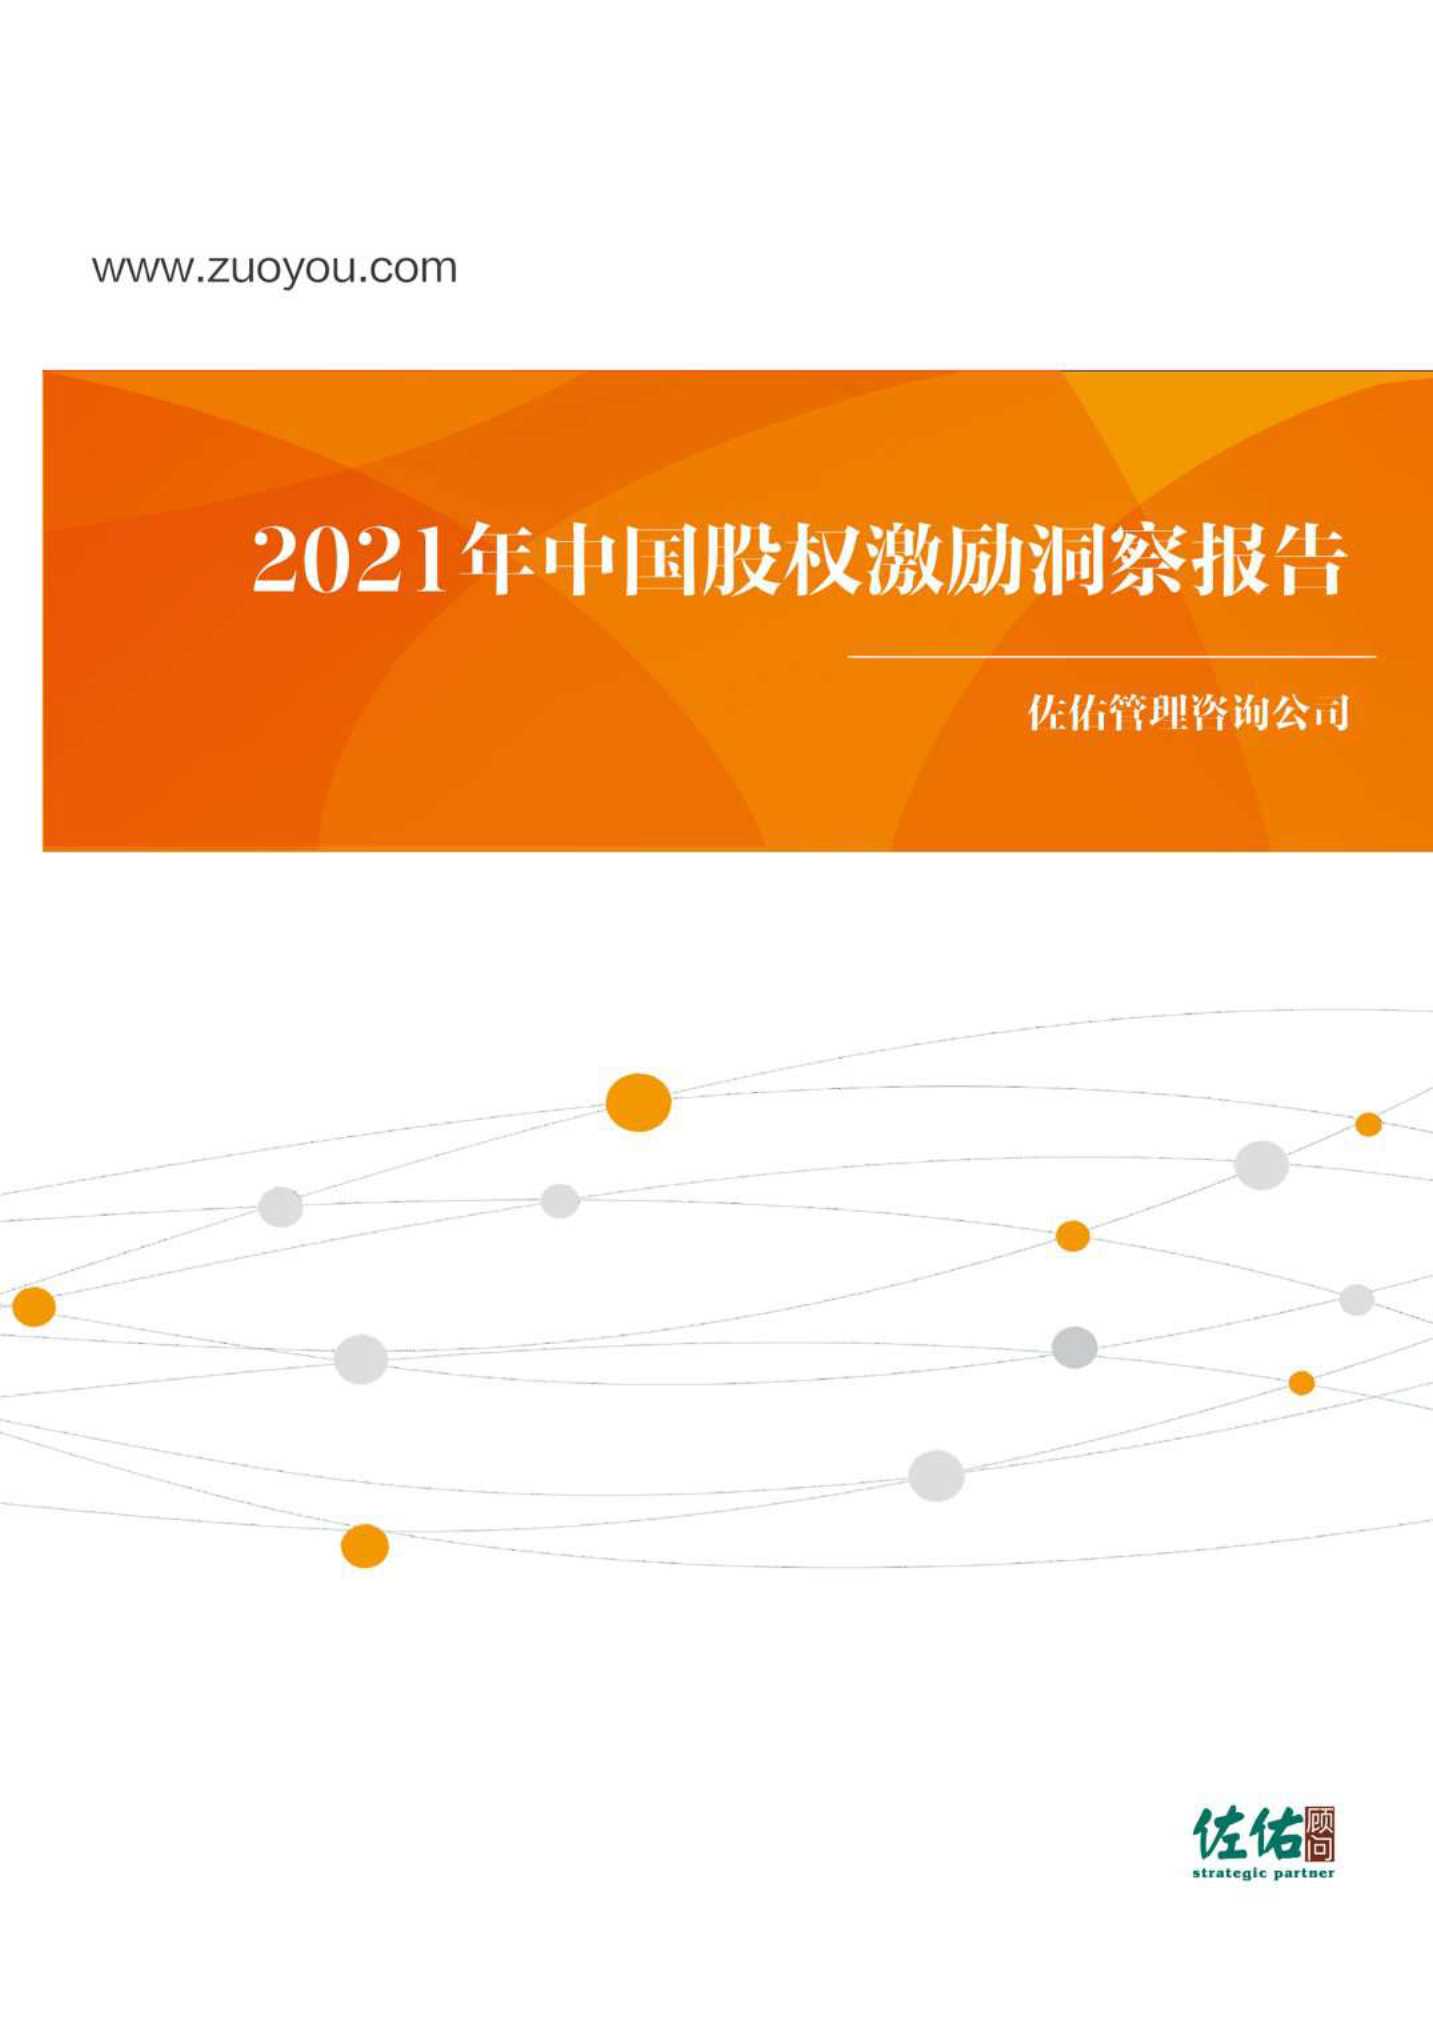 佐佑顾问-2021年中国股权激励洞察报告-2021.06-40页